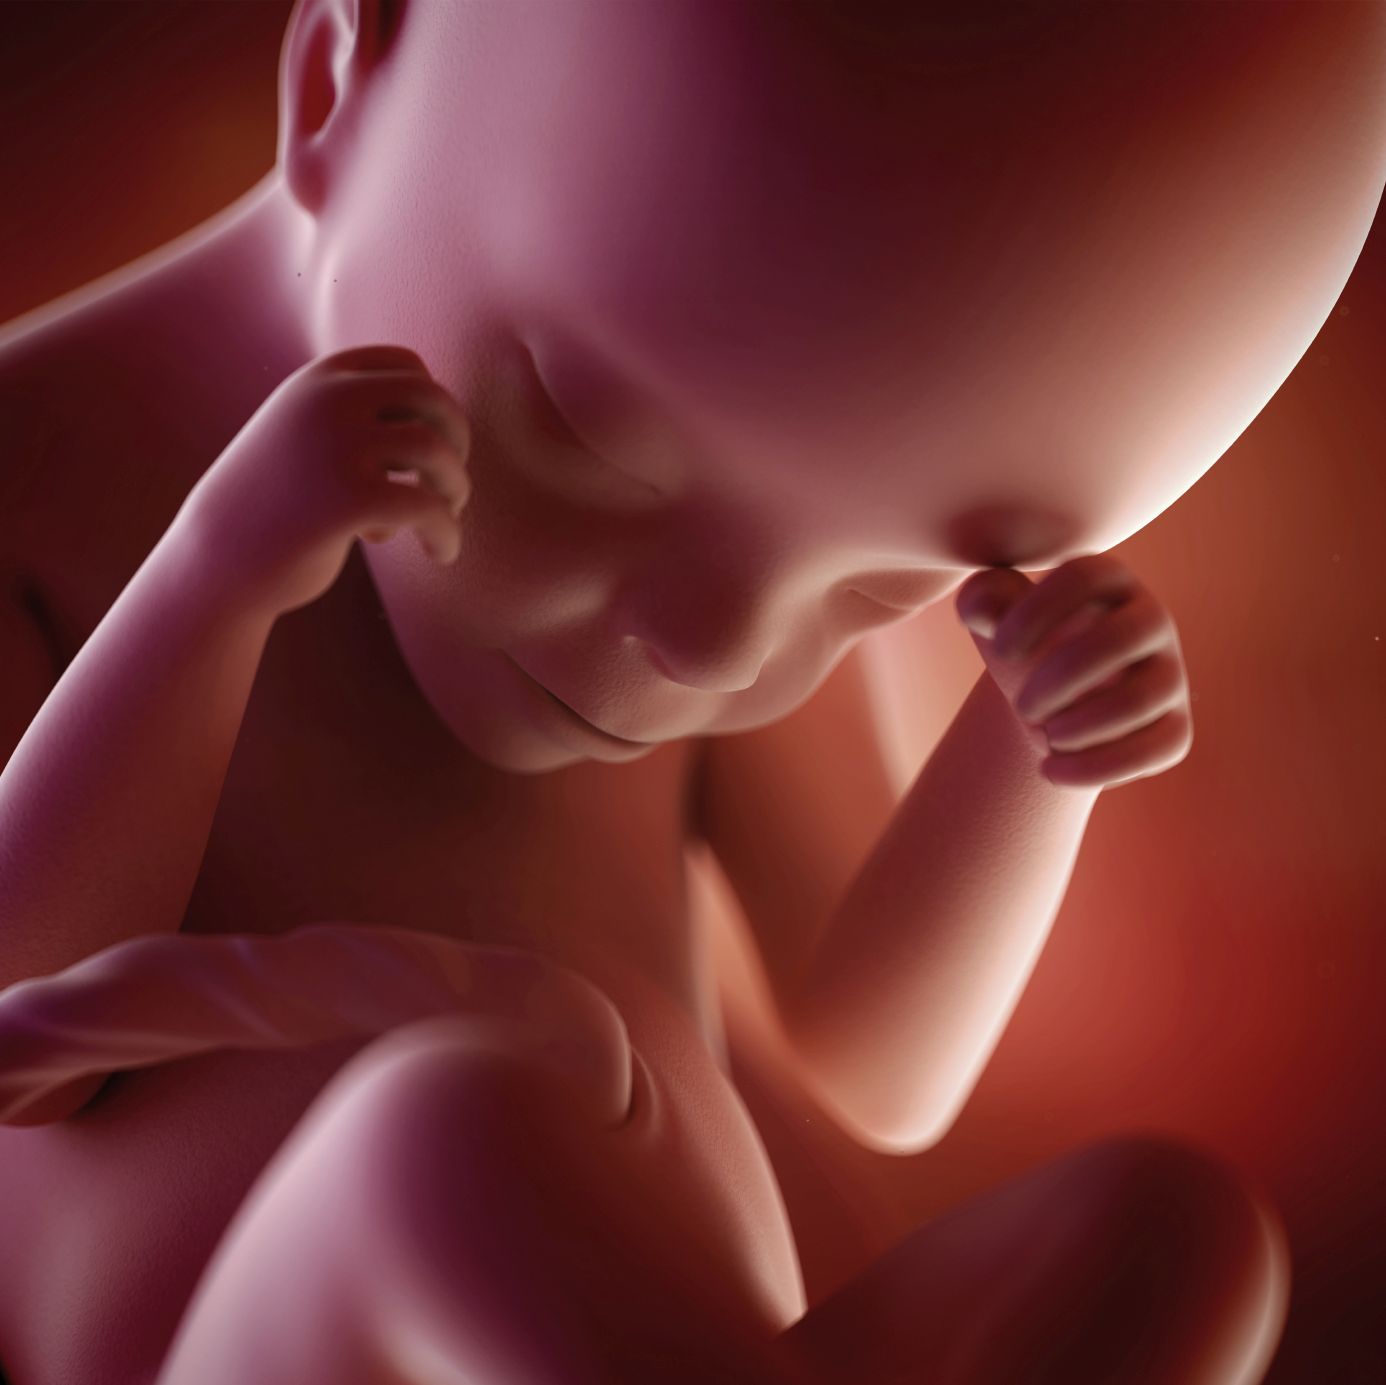 fetus 24 weeks